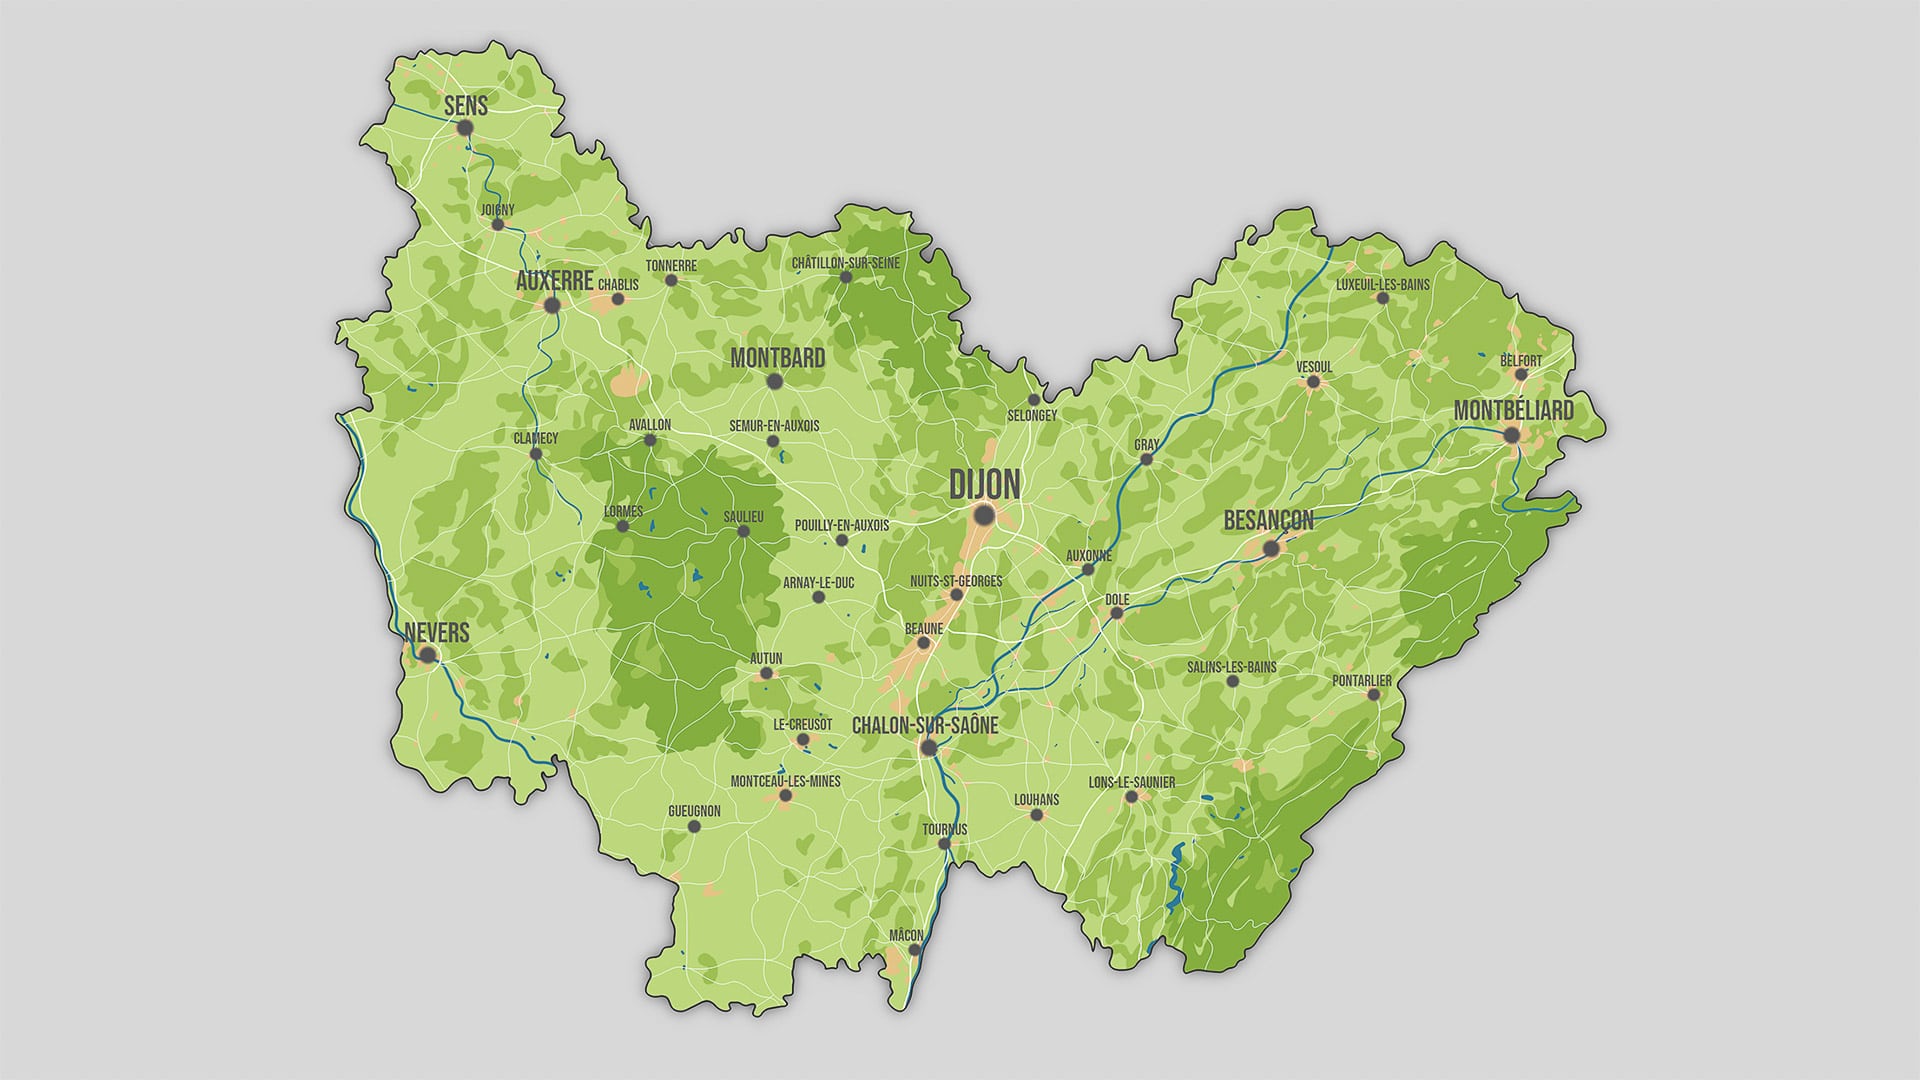 Réalisation d'une carte de la Bourgogne-Franche-Comté